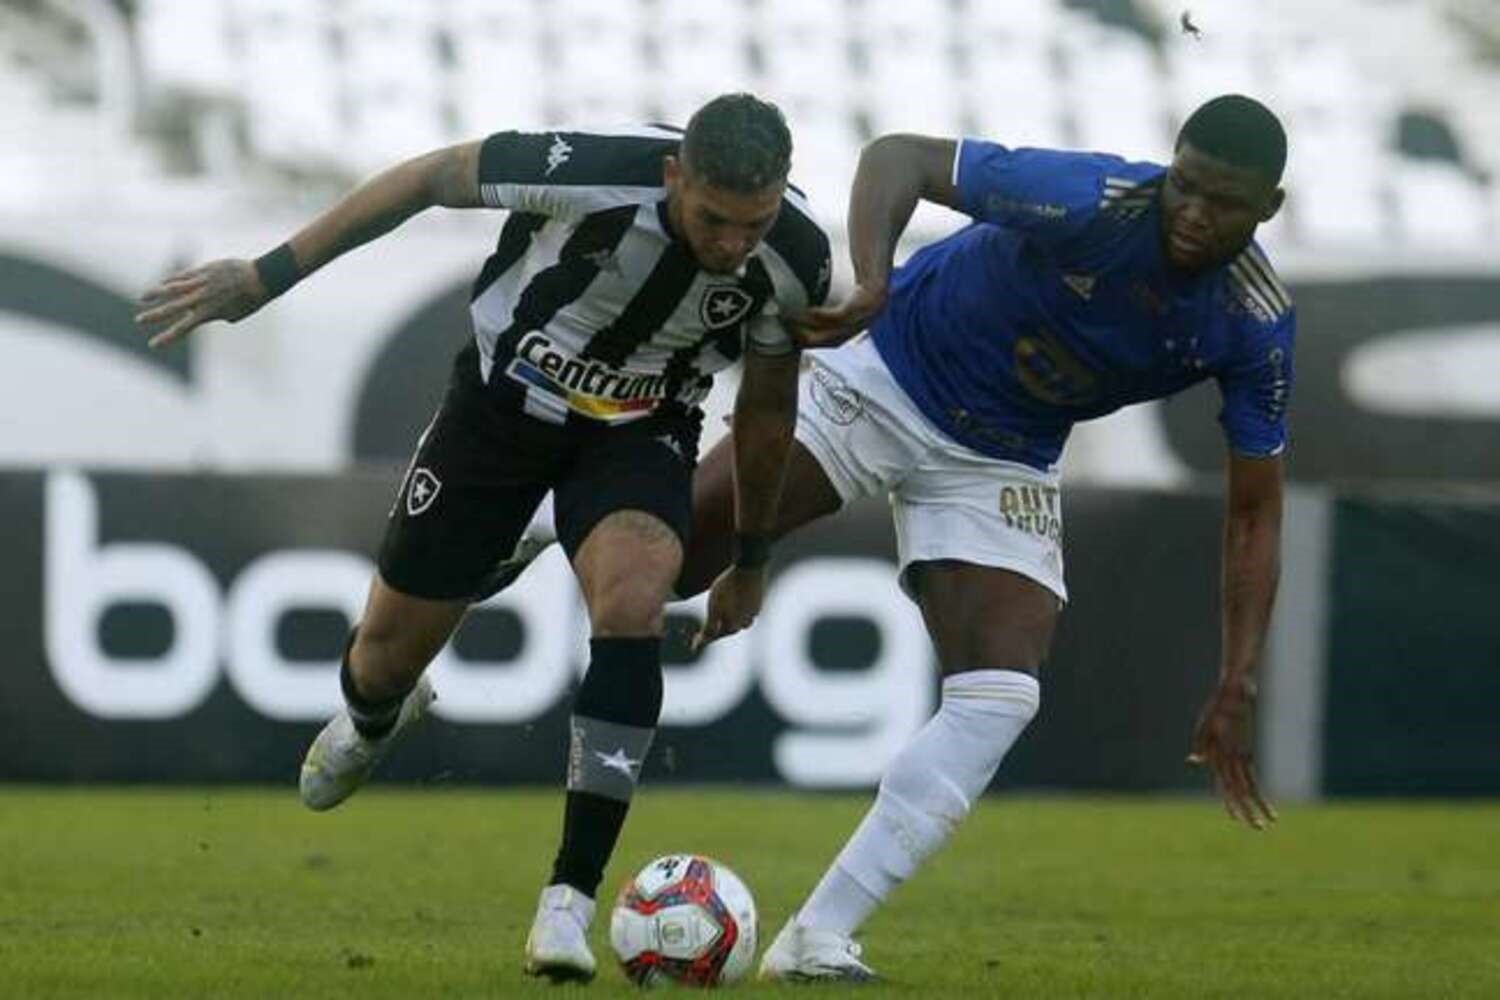 Botafogo libera entrada de crianças e mulheres em jogo contra o Cruzeiro